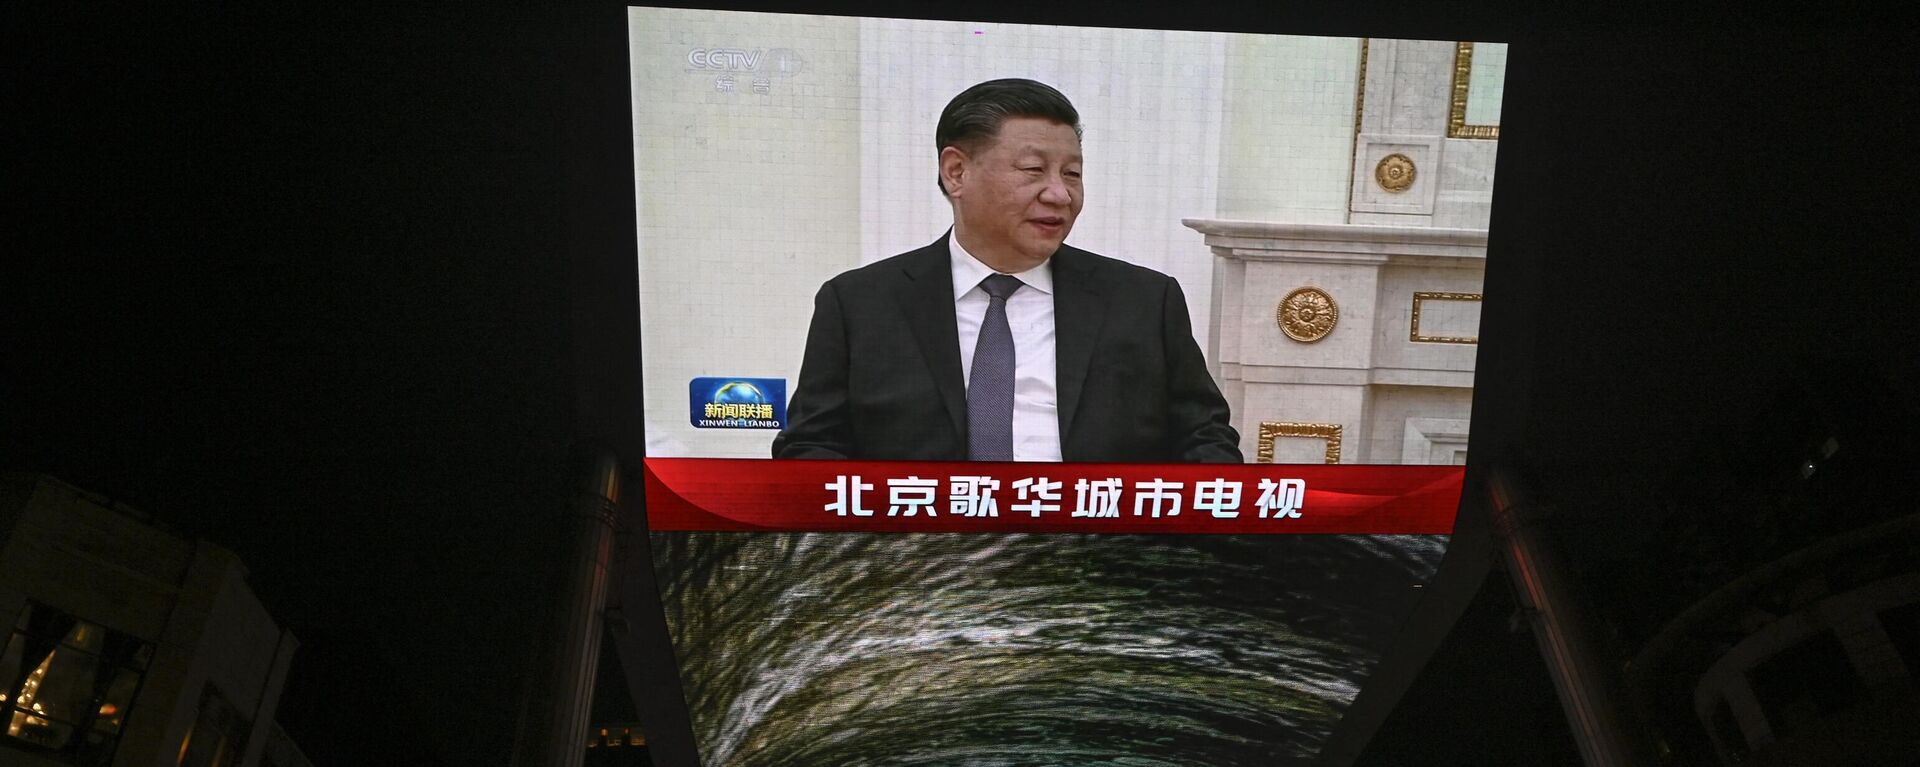 Una pantalla exterior muestra una cobertura de la reunión del presidente de China, Xi Jinping, con el presidente ruso, Vladimir Putin, durante una visita de Estado en Moscú, a lo largo de una calle de Pekín el 21 de marzo de 2023. - Sputnik Mundo, 1920, 06.05.2023